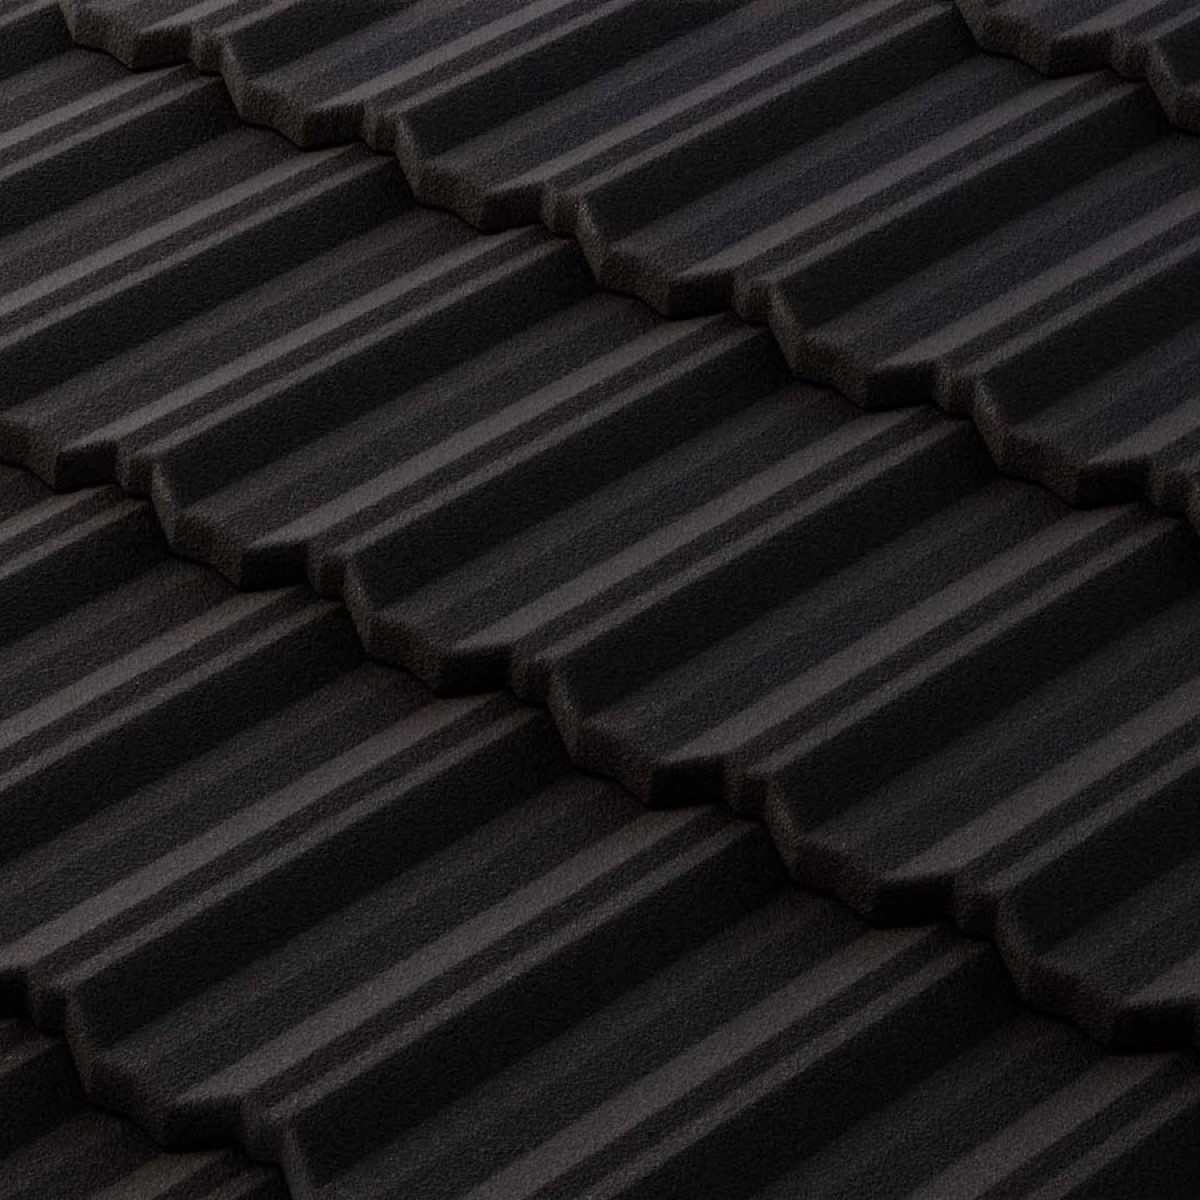 Metrotile Classic Metāla dakstiņi ar akmens smalci, 1330x415mm, coal black